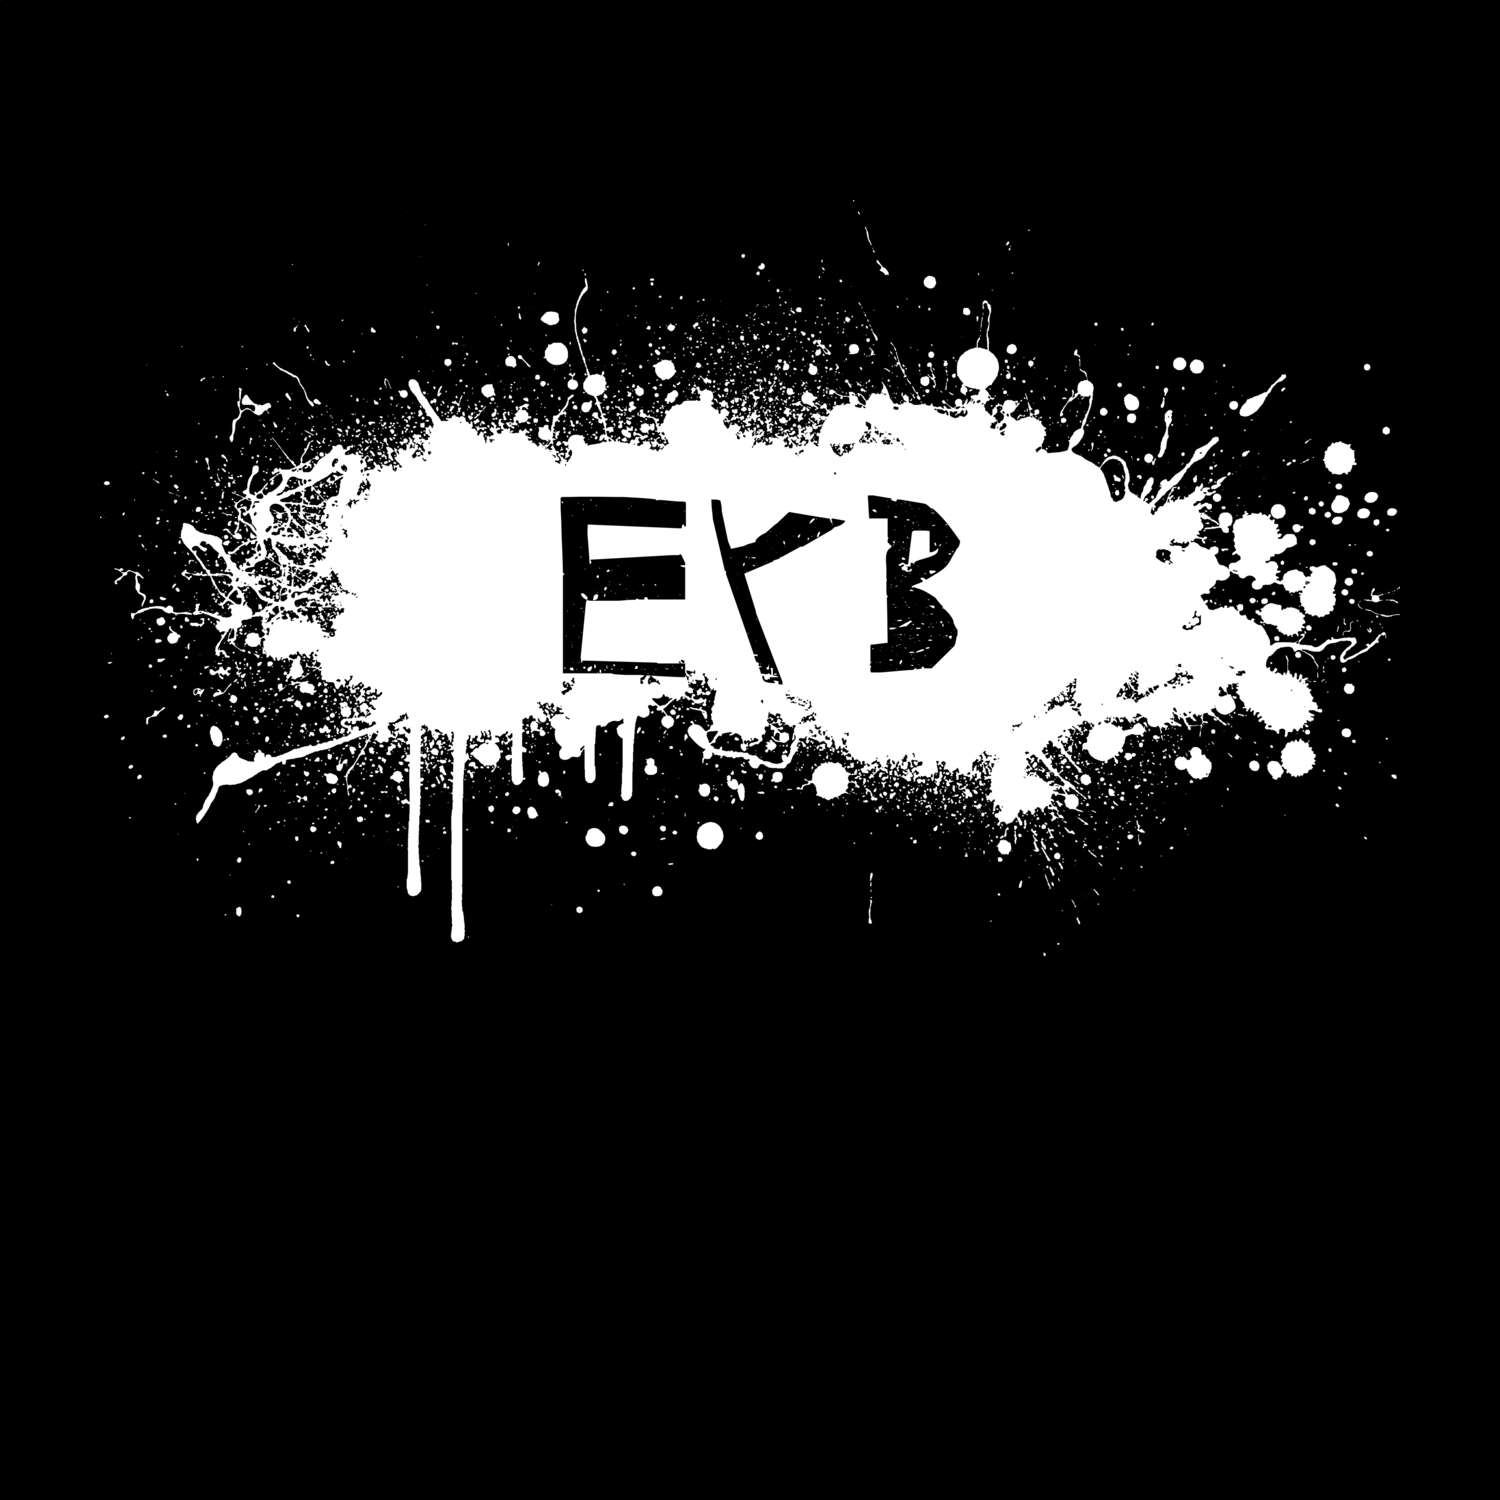 Eyb T-Shirt »Paint Splash Punk«